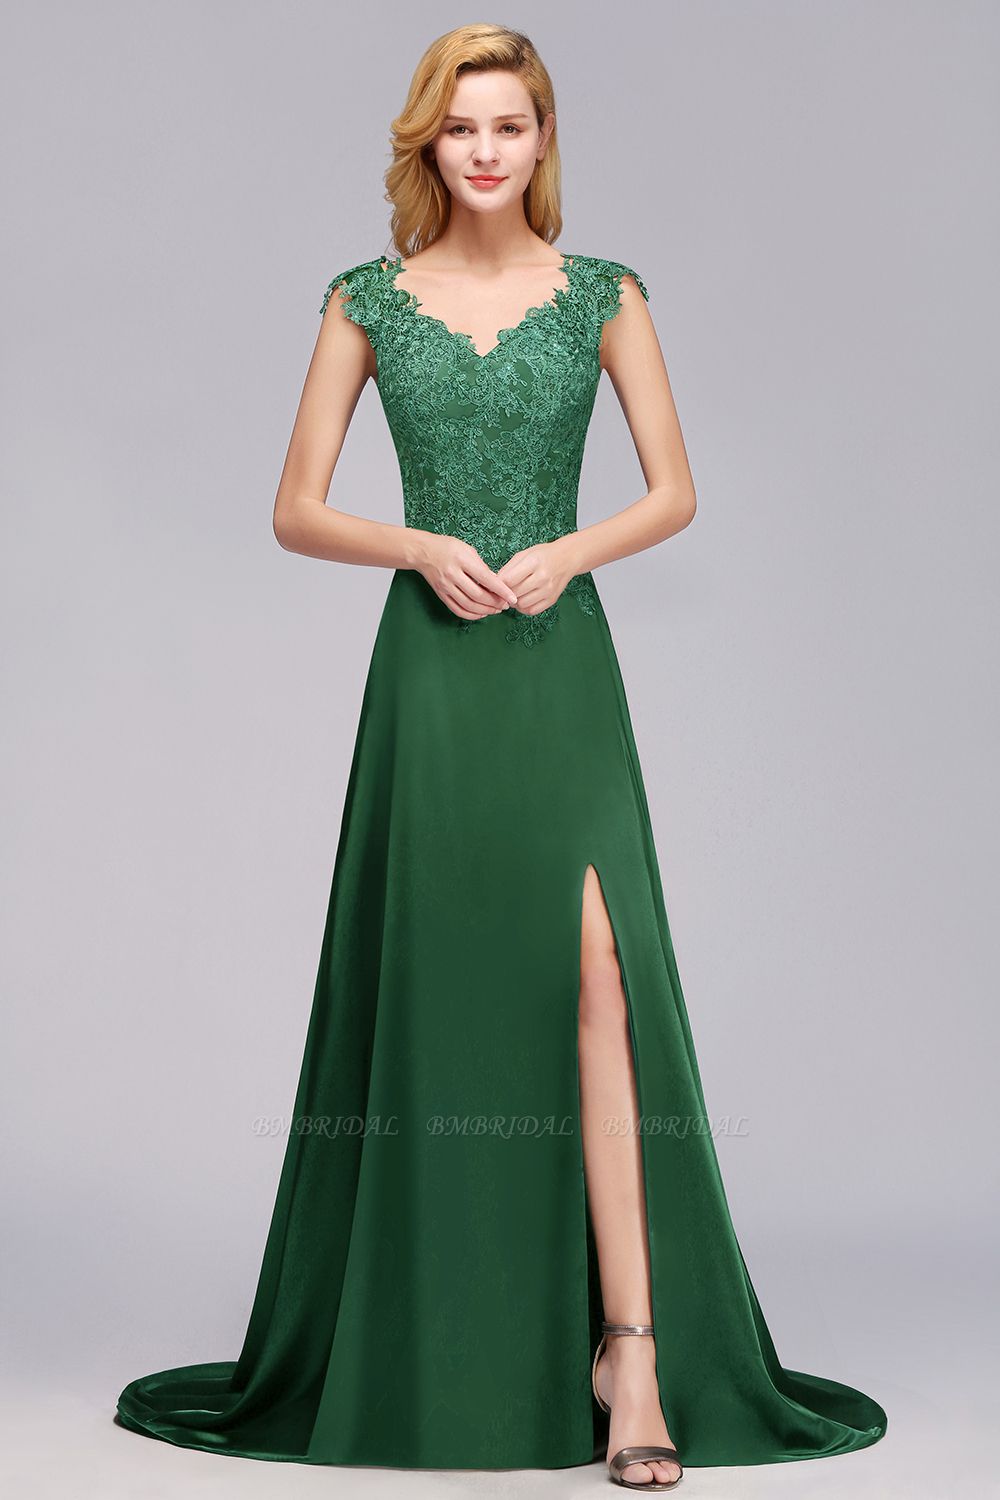 BMbridal Elegant V-Neck Dark Green Lace Bridesmaid Dresses with Front-Slit